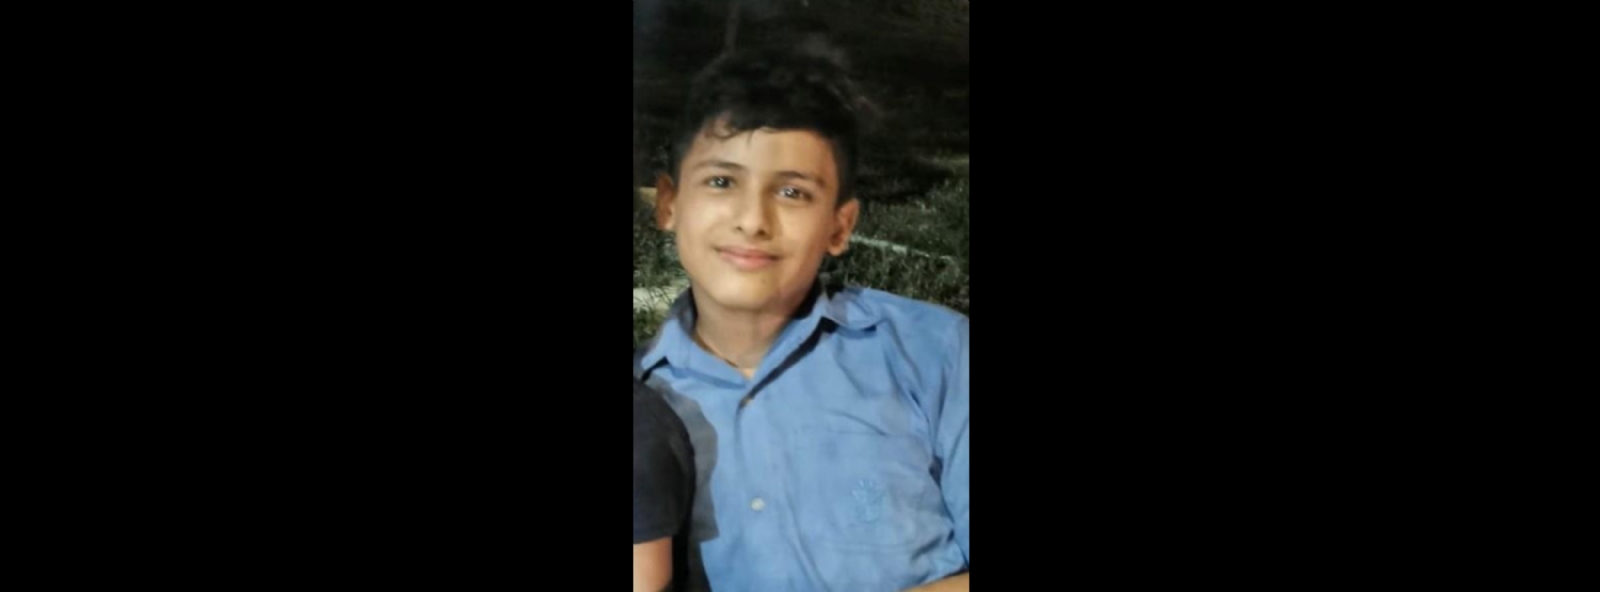 El menor de 14 años fue visto por última vez el pasado 5 de febrero en Mérida